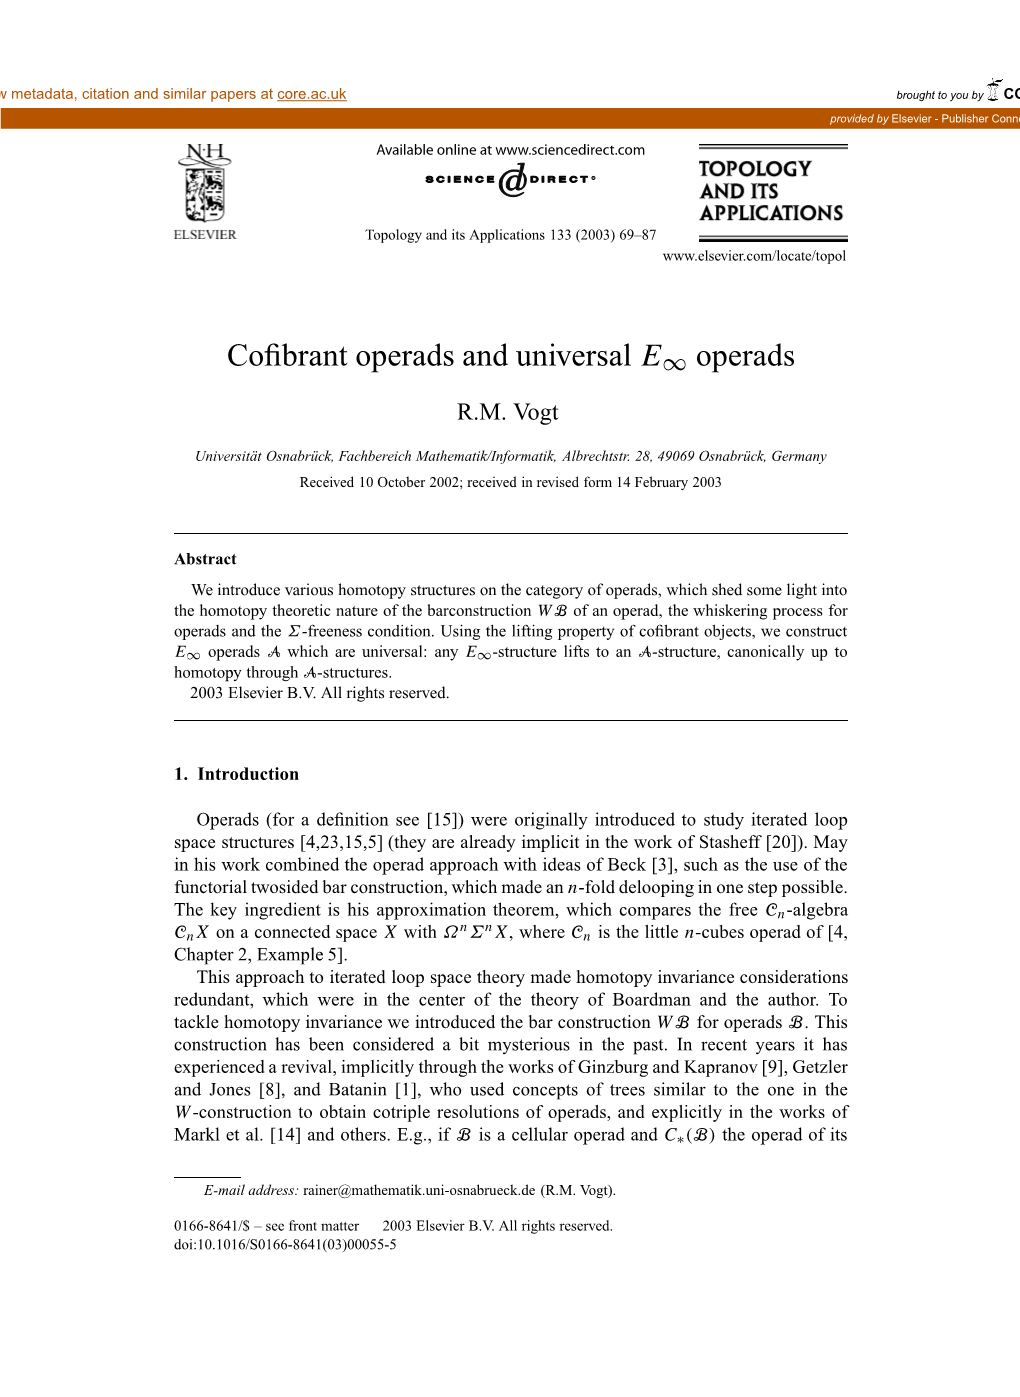 Cofibrant Operads and Universal E∞ Operads